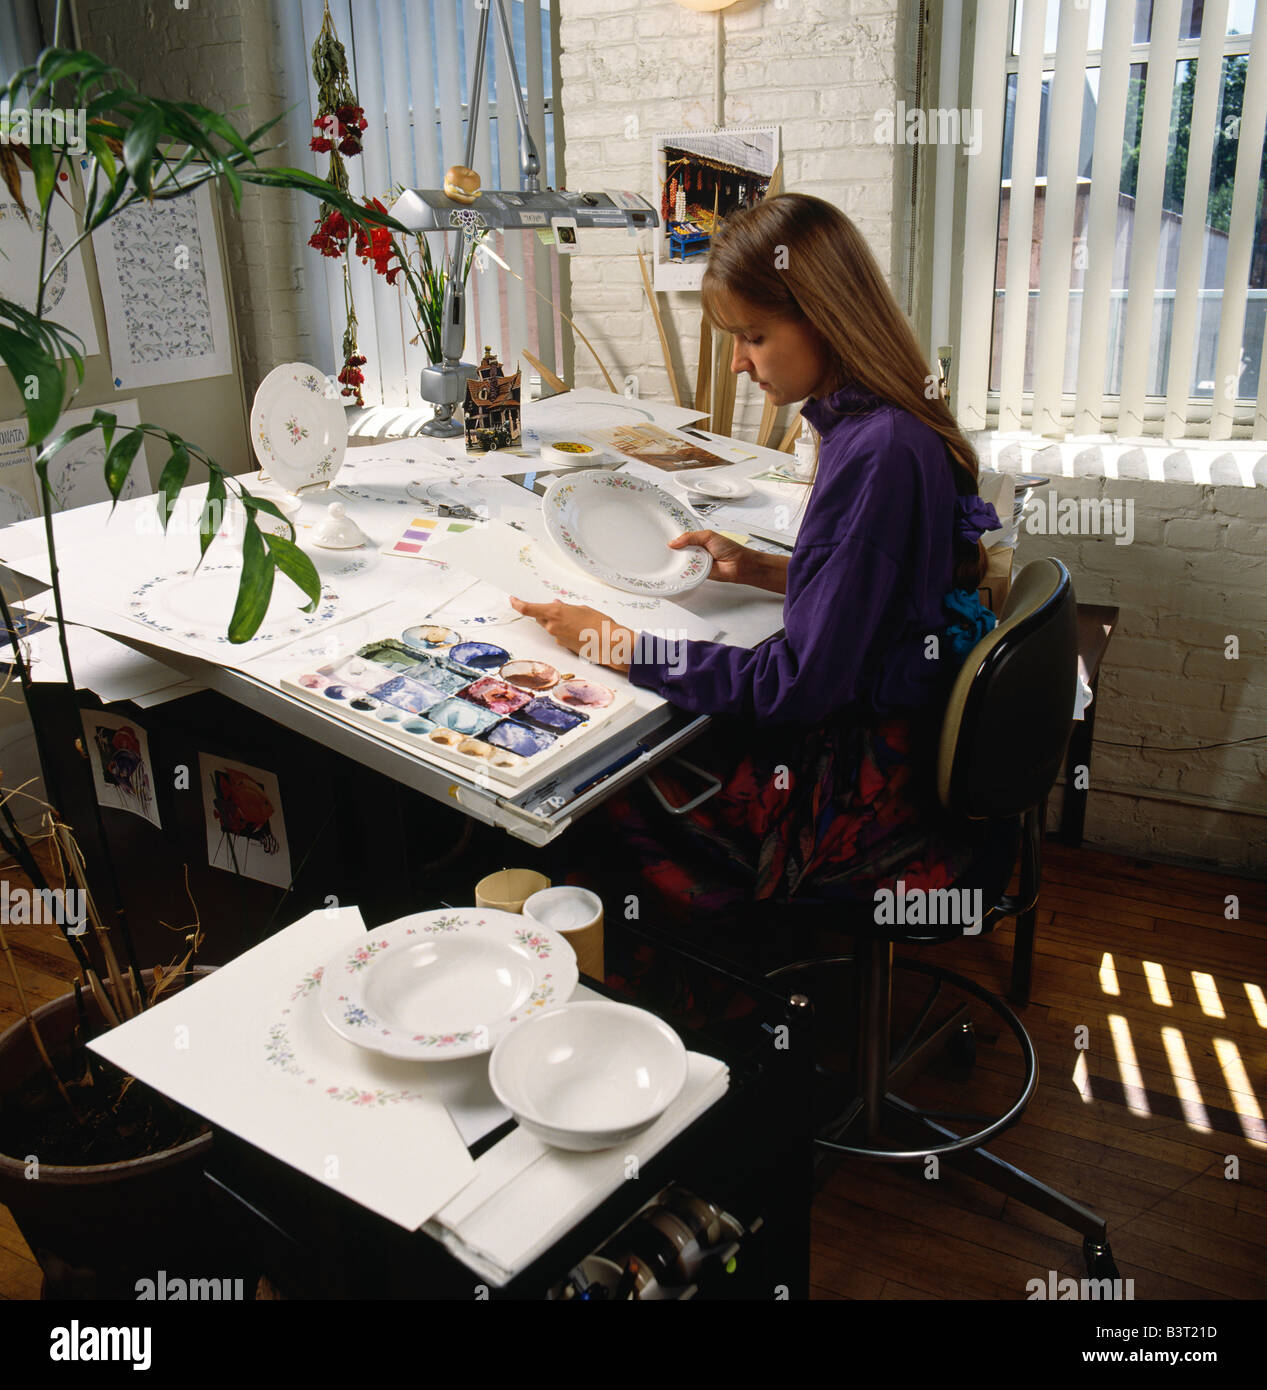 DESIGNER femmina lavorando su nuovi progetti per la tabella ware. La società PFALTZGRAFF, ceramiche Company, USA Foto Stock